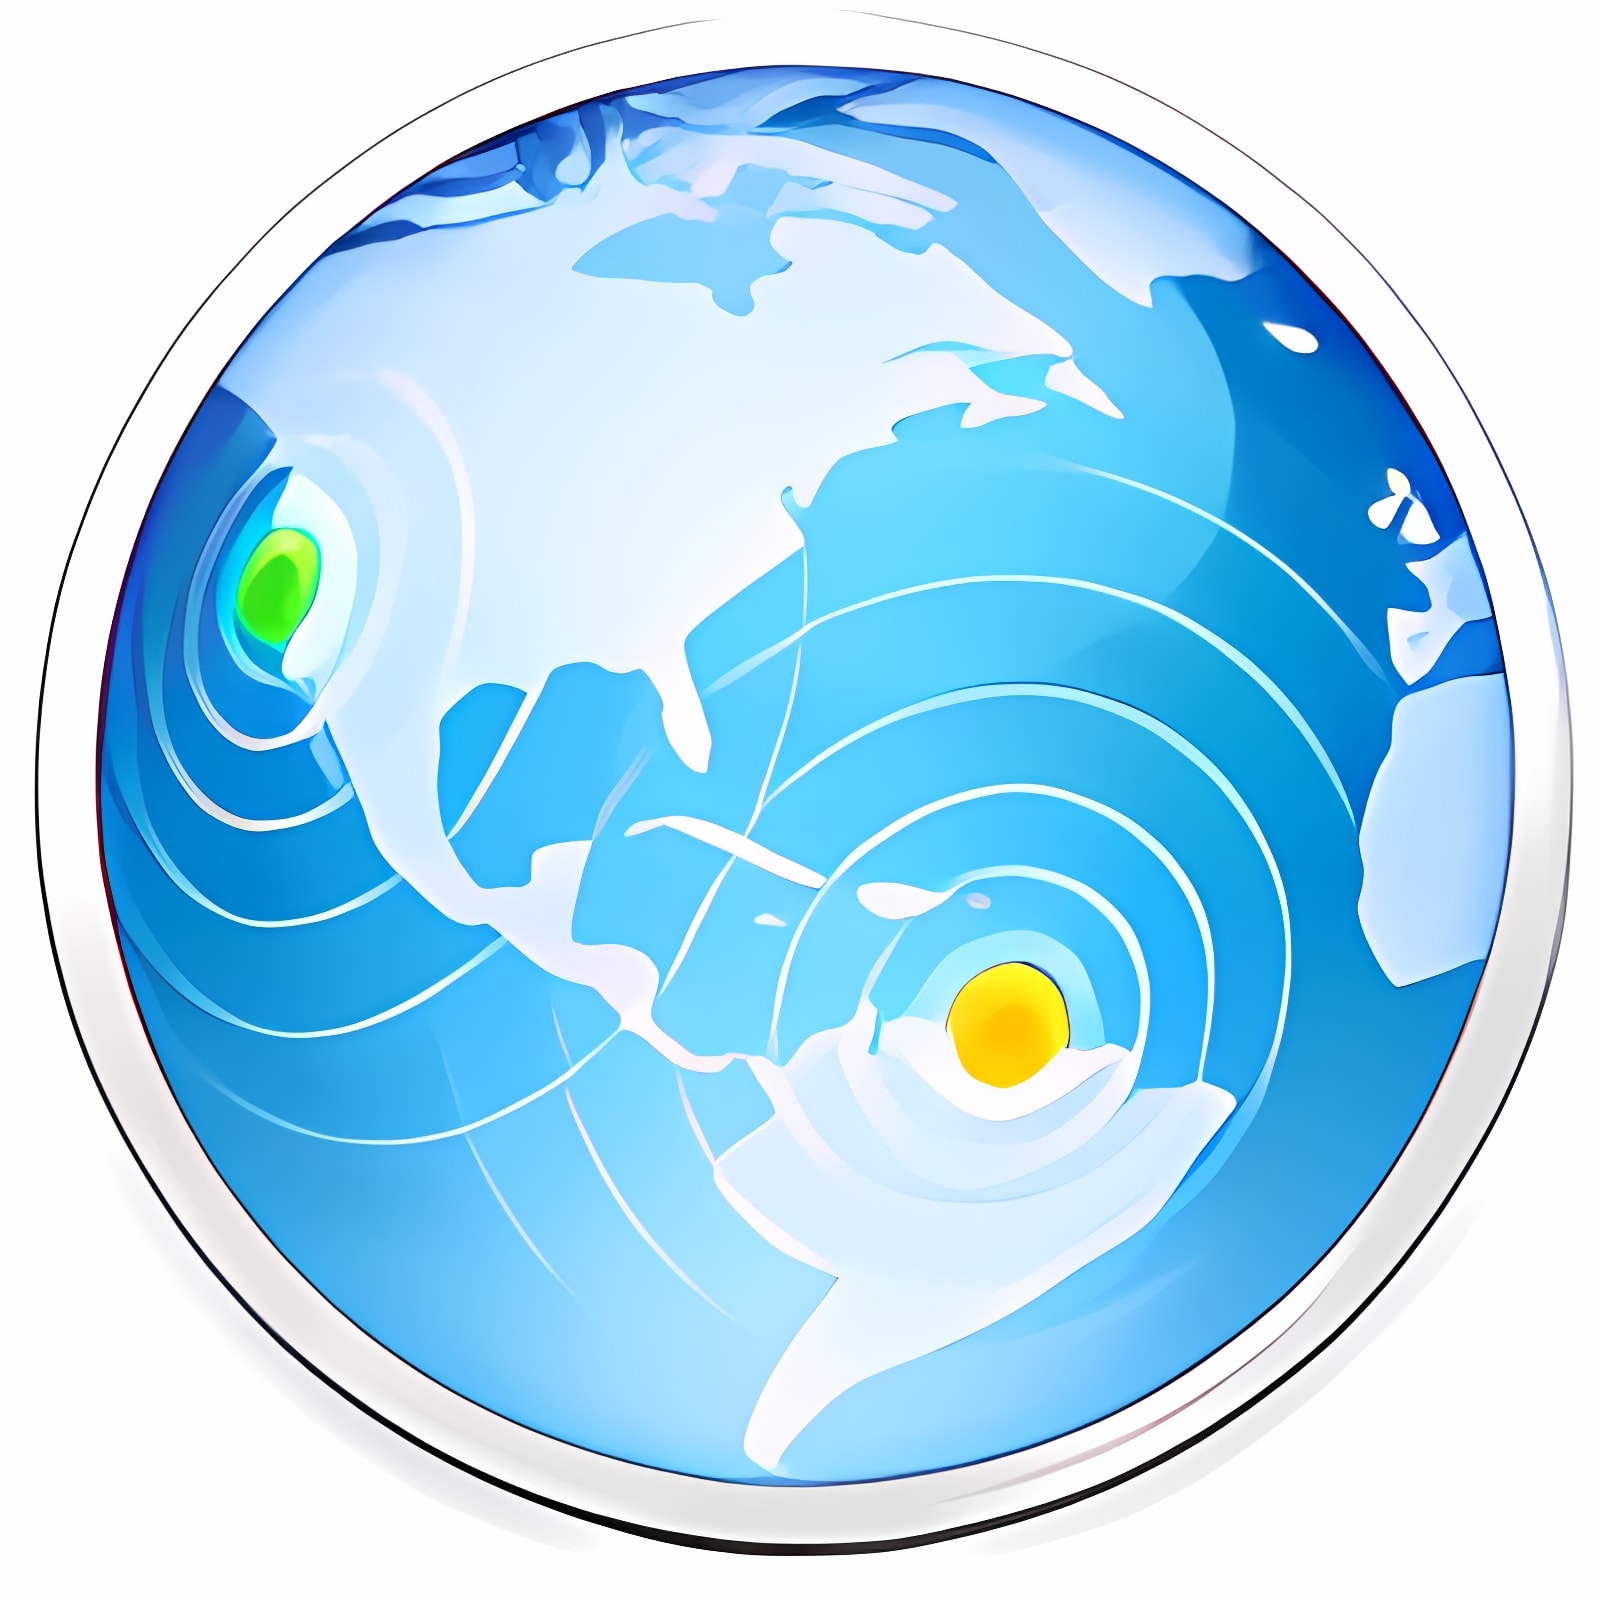 Baixar OS X Server Instalar Mais recente Aplicativo Downloader